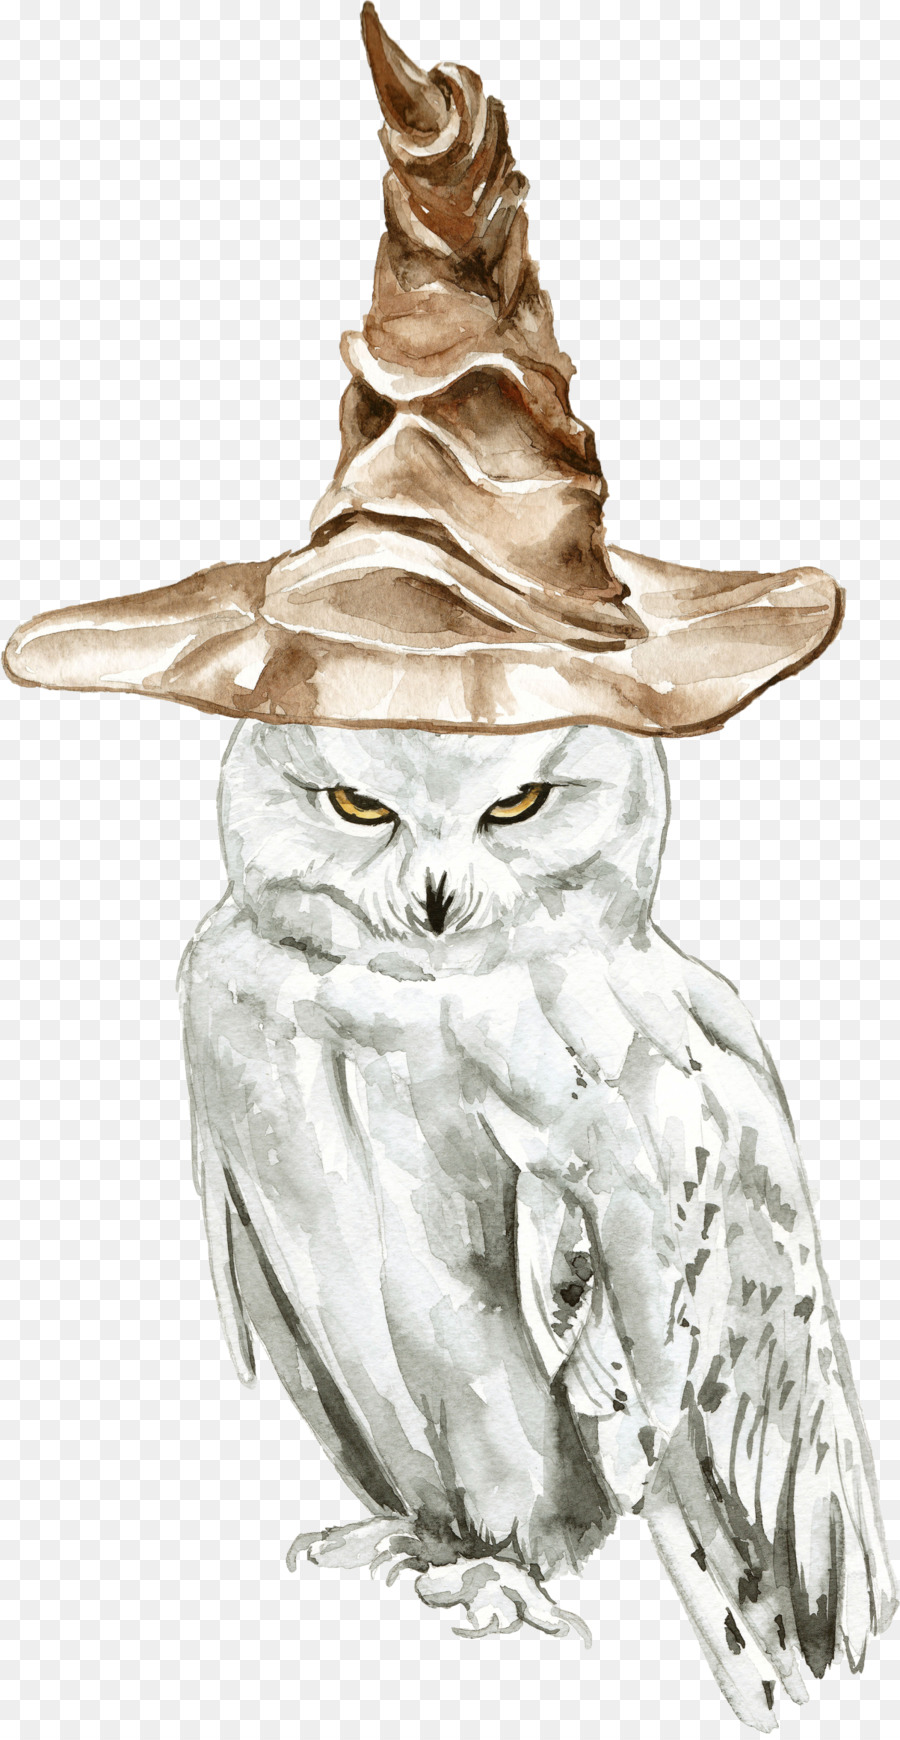 Owl Drawing Illustration Harry Potter Sketch - harry potter owl png books png download - 1204*2320 - Free Transparent Owl png Download.